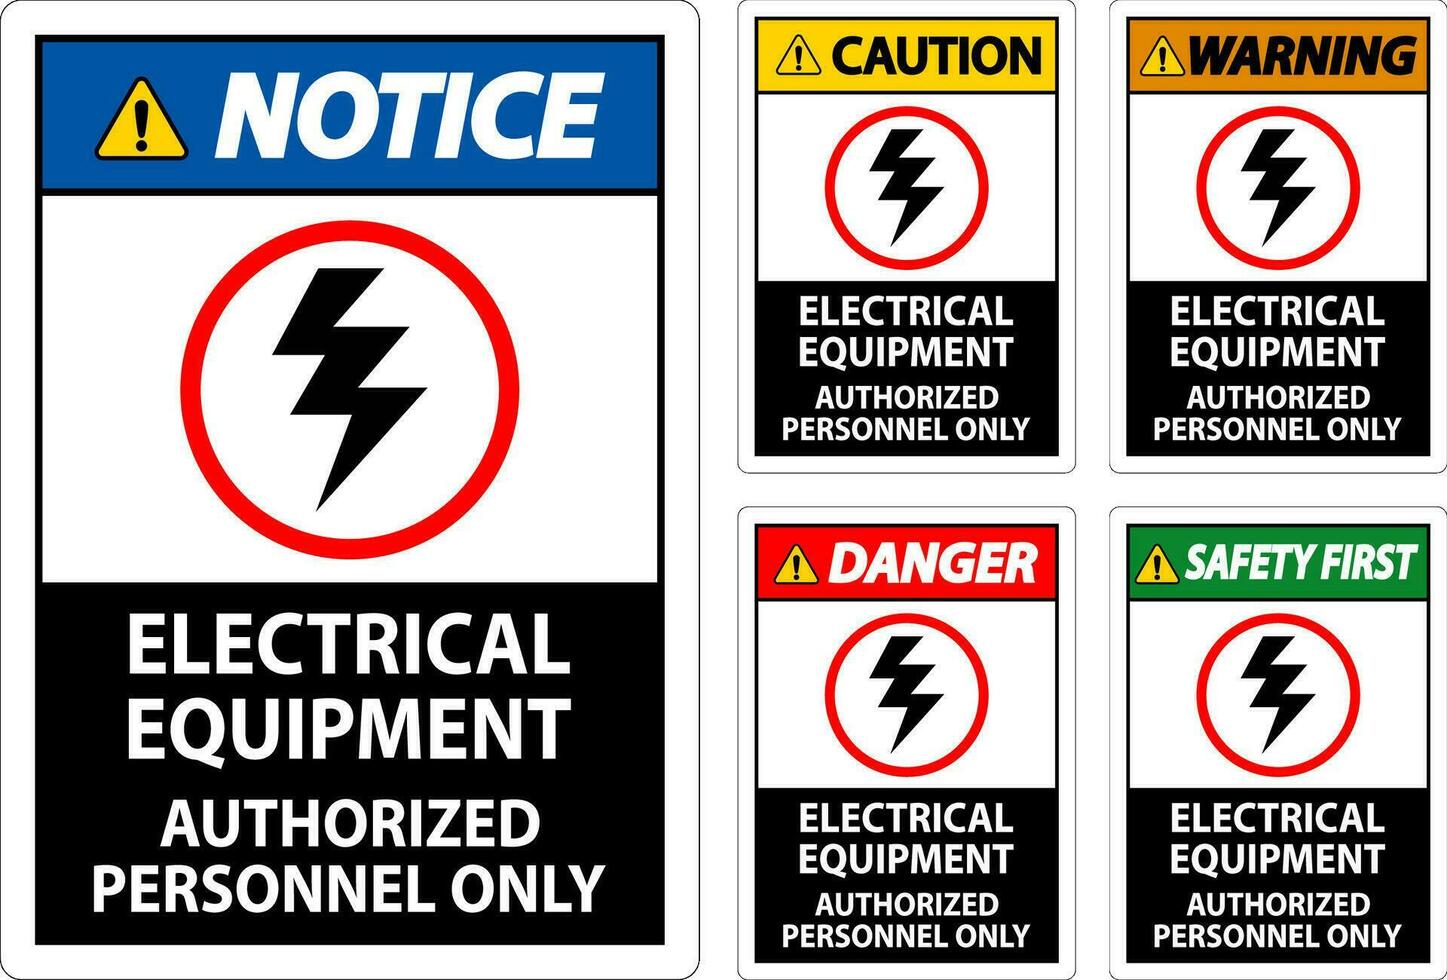 elektrisk säkerhet tecken fara, elektrisk Utrustning auktoriserad personal endast vektor